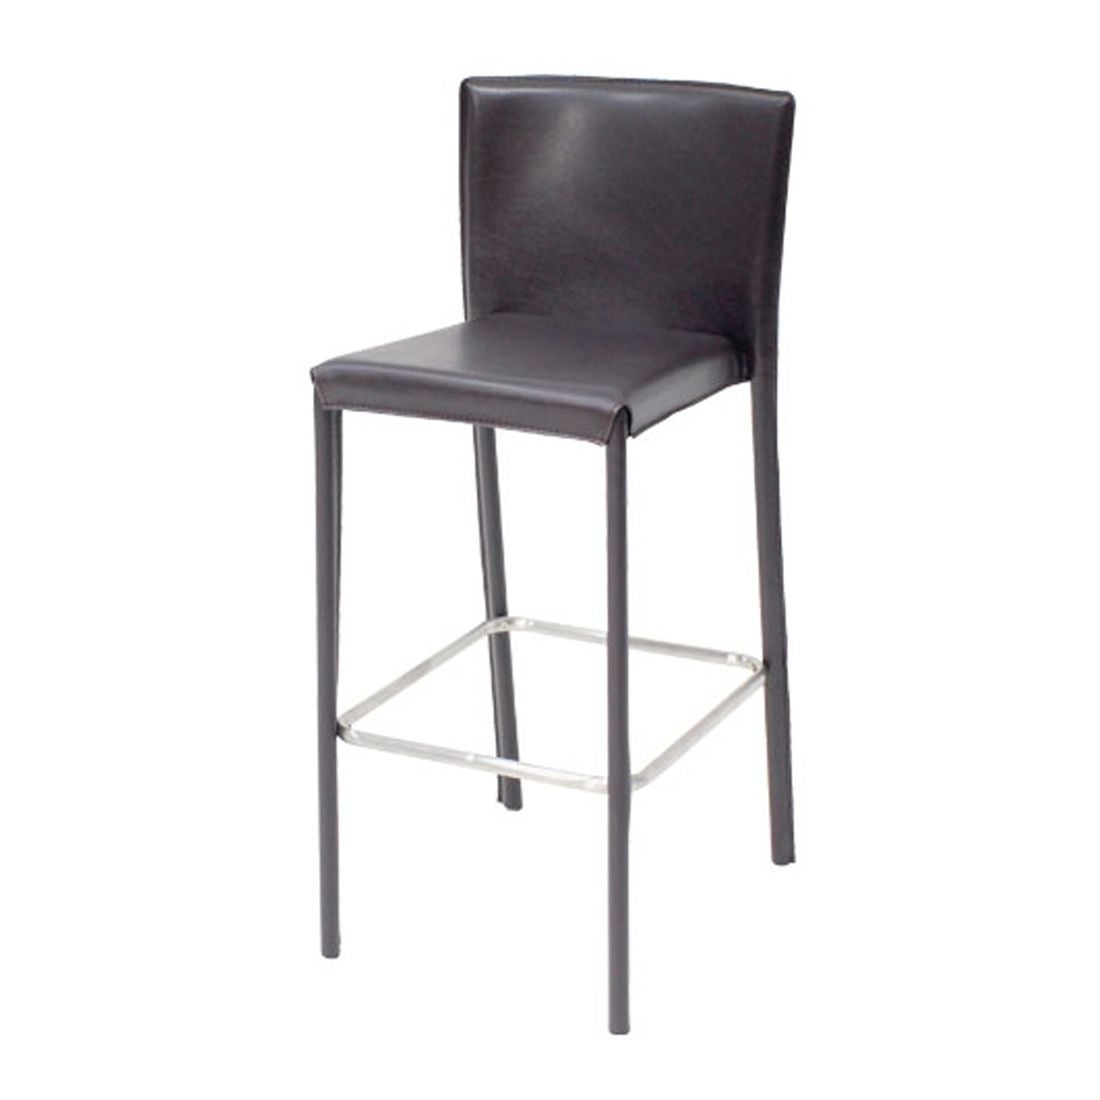 เก้าอี้ทานอาหาร เก้าอี้สตูลบาร์เหล็กเบาะหนัง รุ่น Yaimai สีสีน้ำตาล-SB Design Square